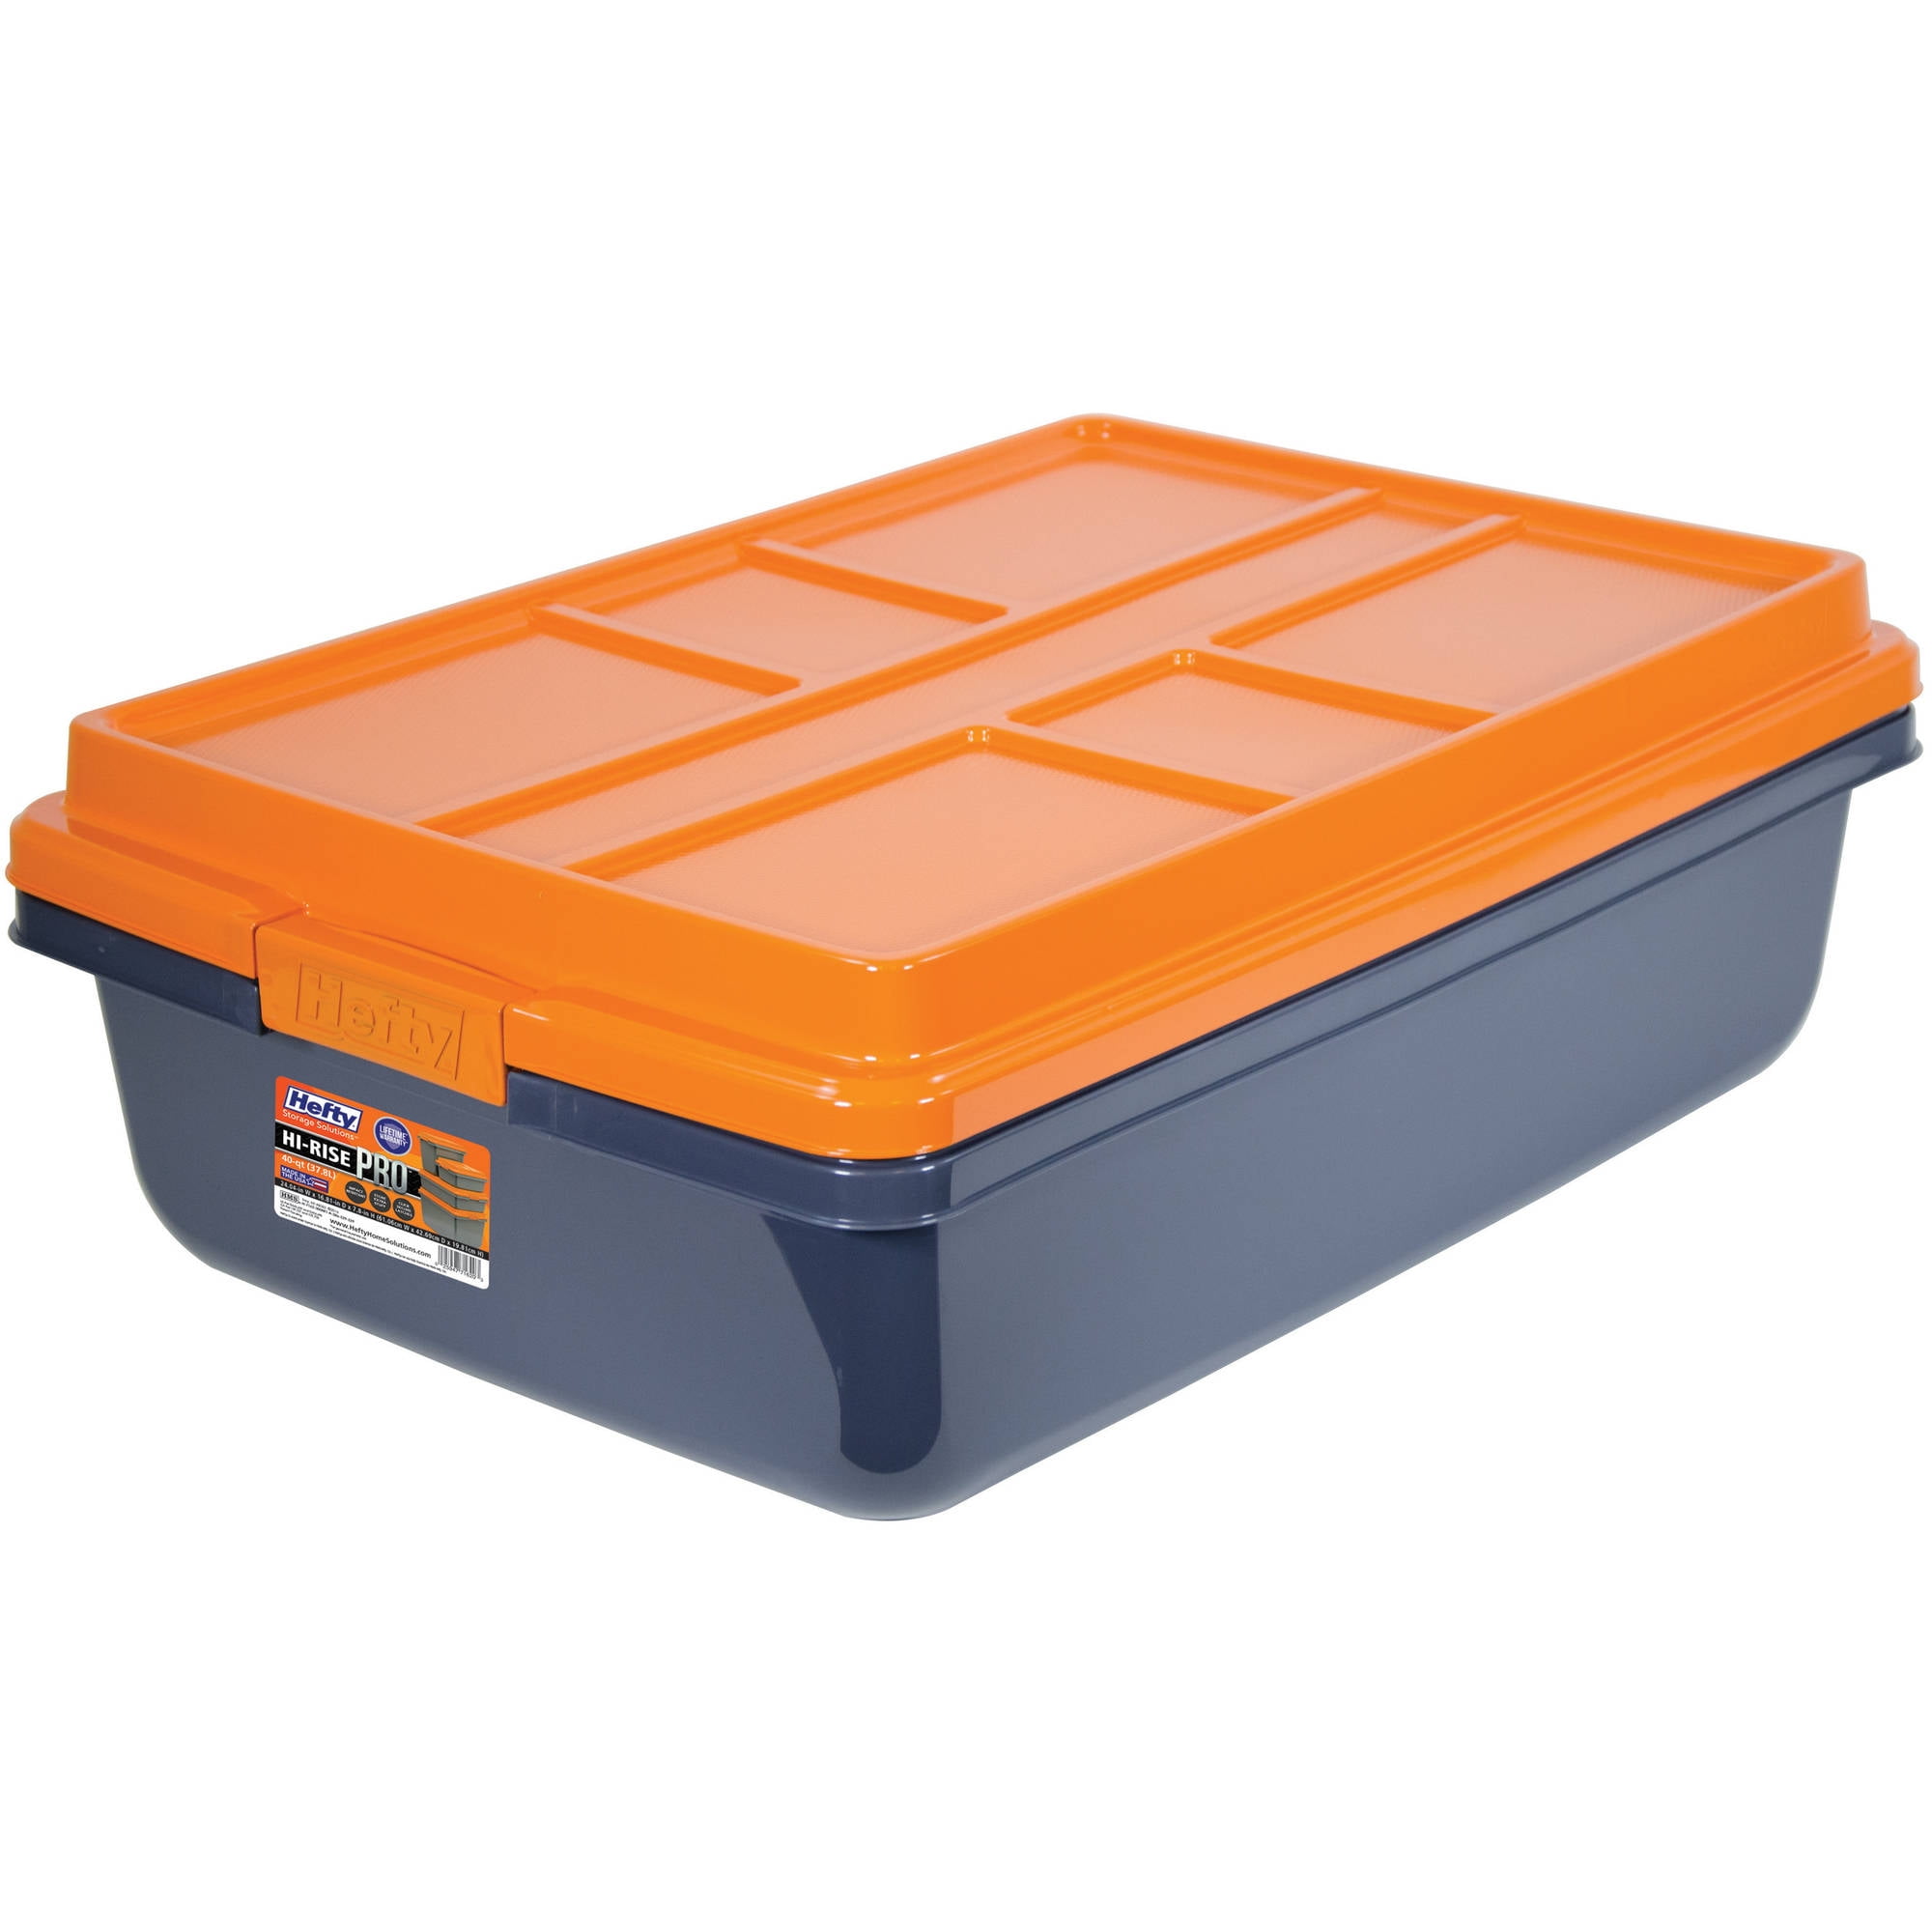 Hefty HI-RISE PRO Heavy Duty 40 Qt. Latch Storage Bin, Orange/Gray 